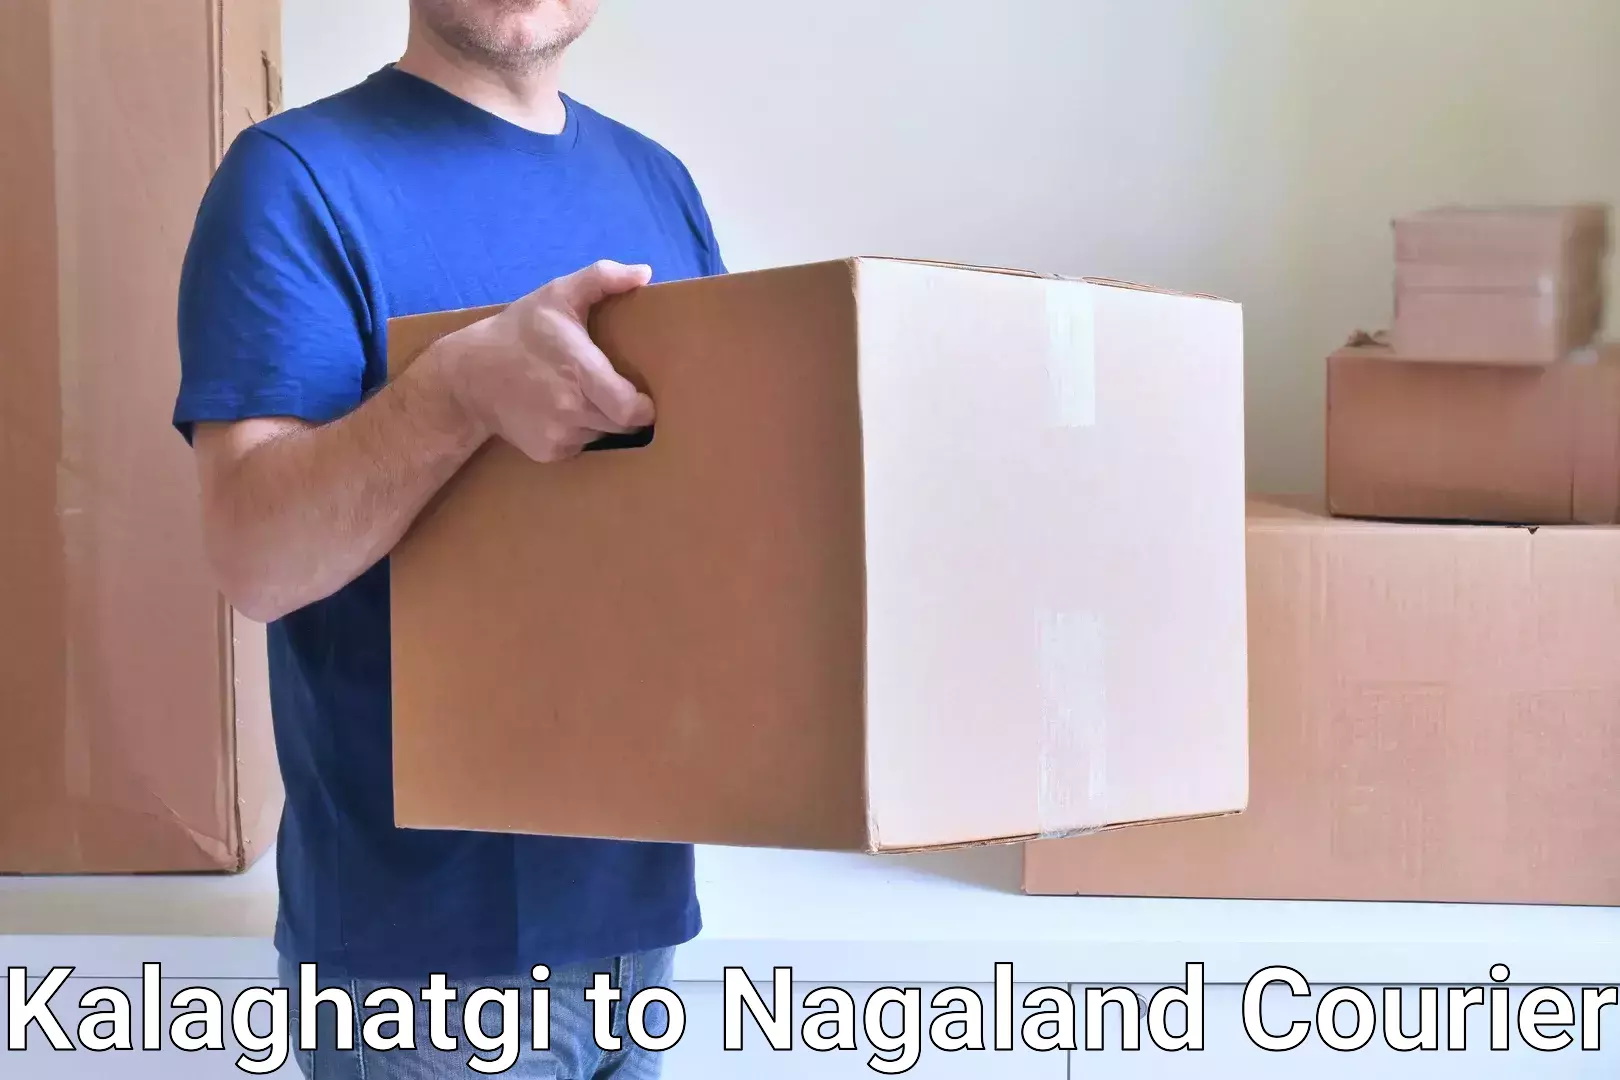 Global shipping solutions Kalaghatgi to Longleng